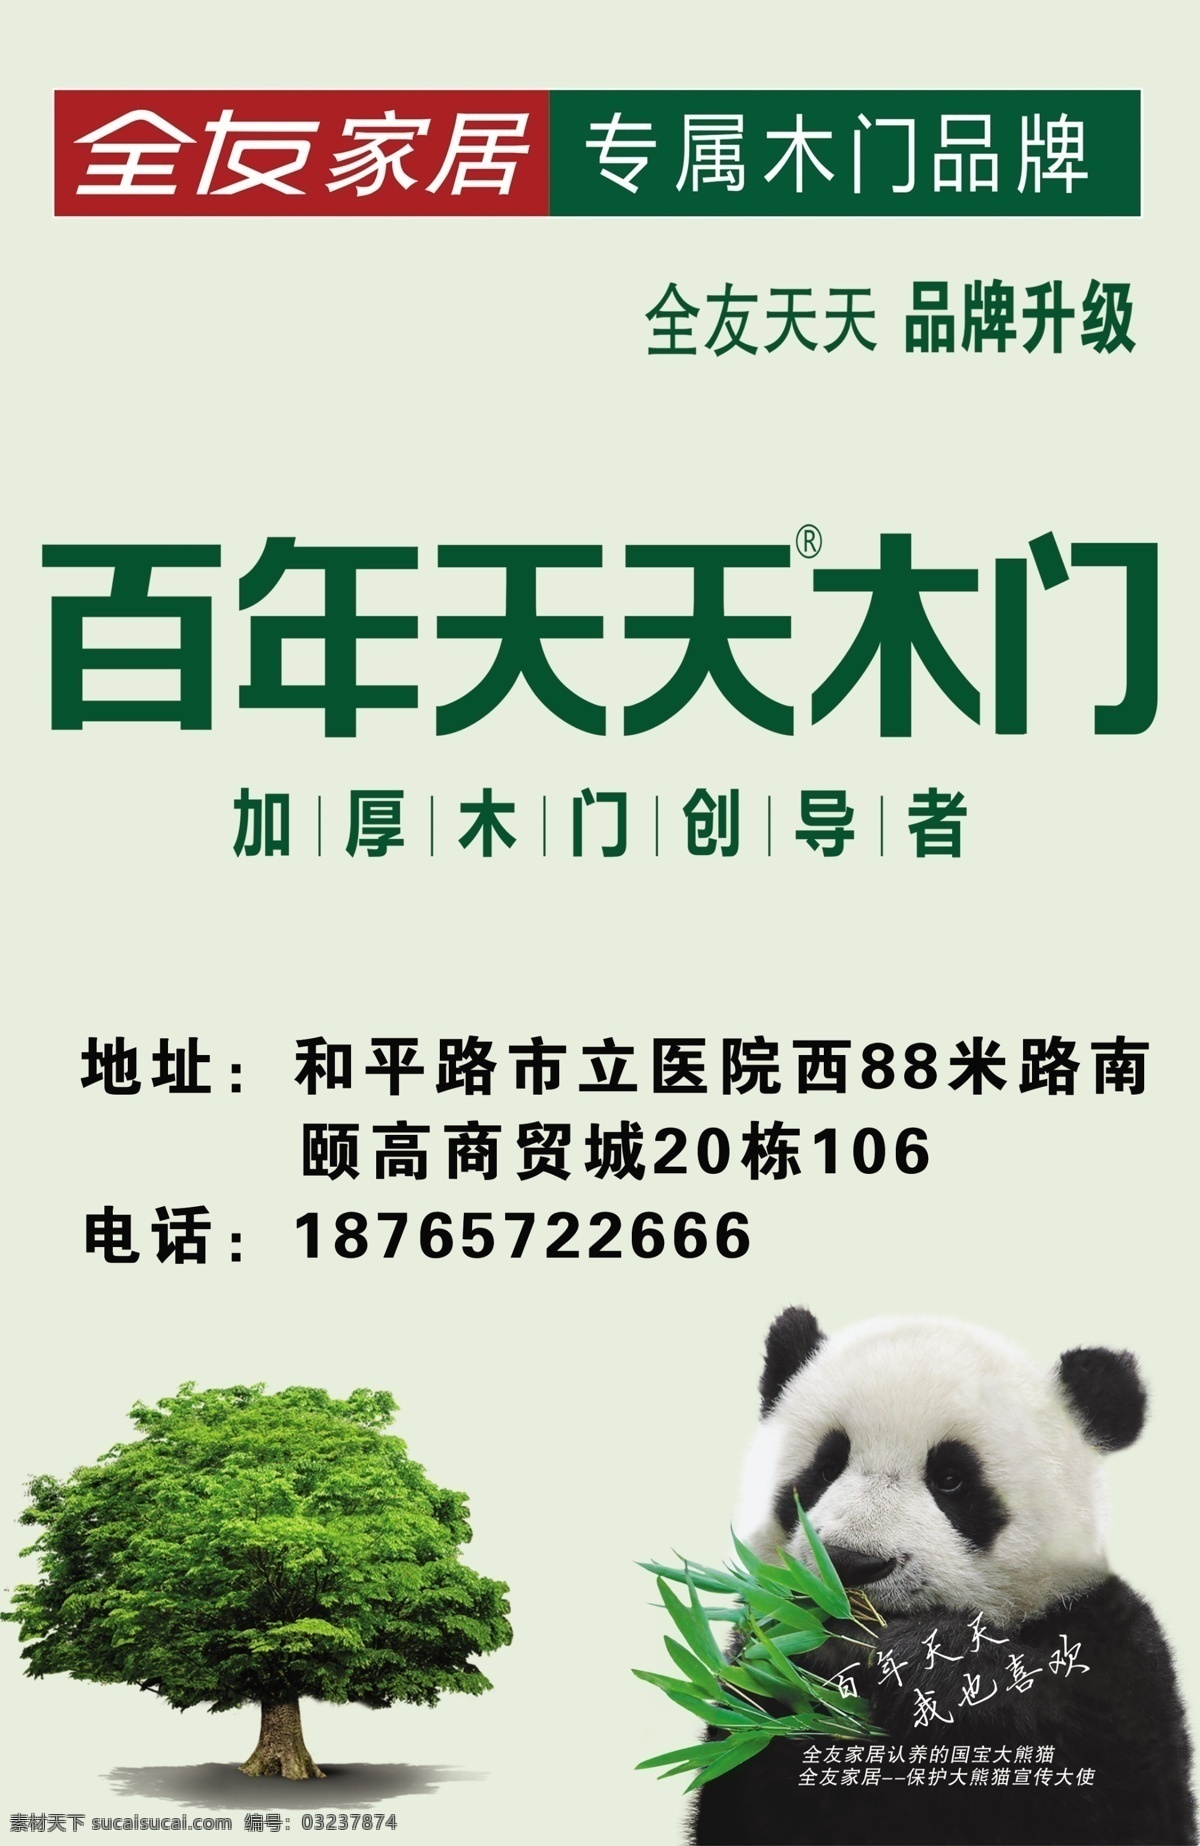 百年天天木门 熊猫 竹子 标志 宣传画 海报 分层